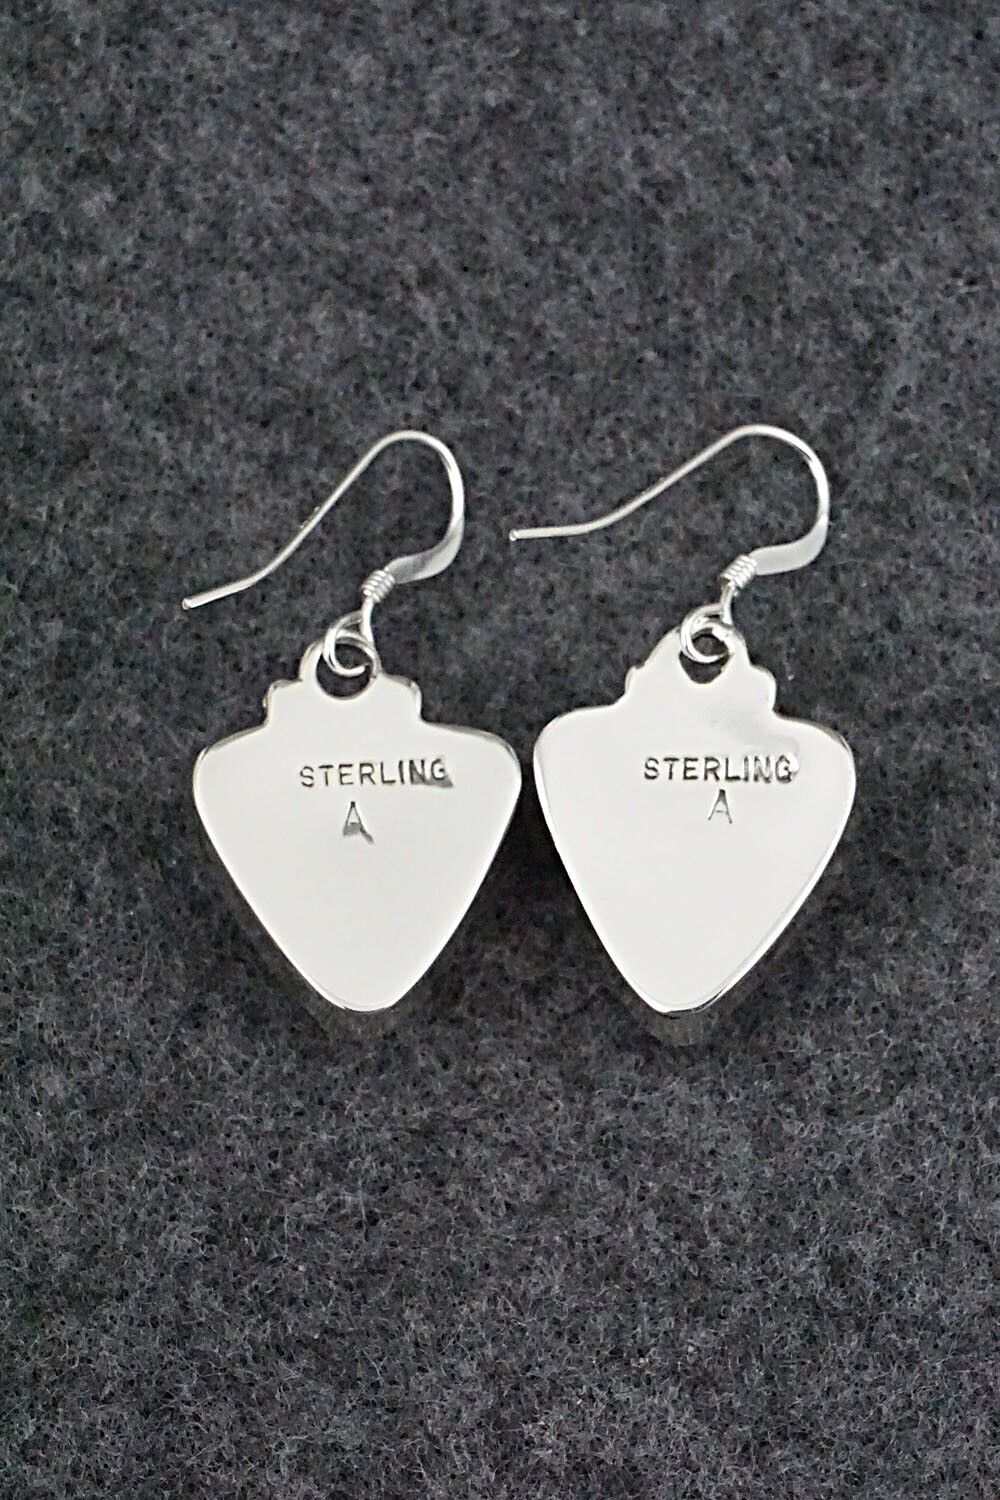 White Buffalo & Sterling Silver Earrings - David Lopez